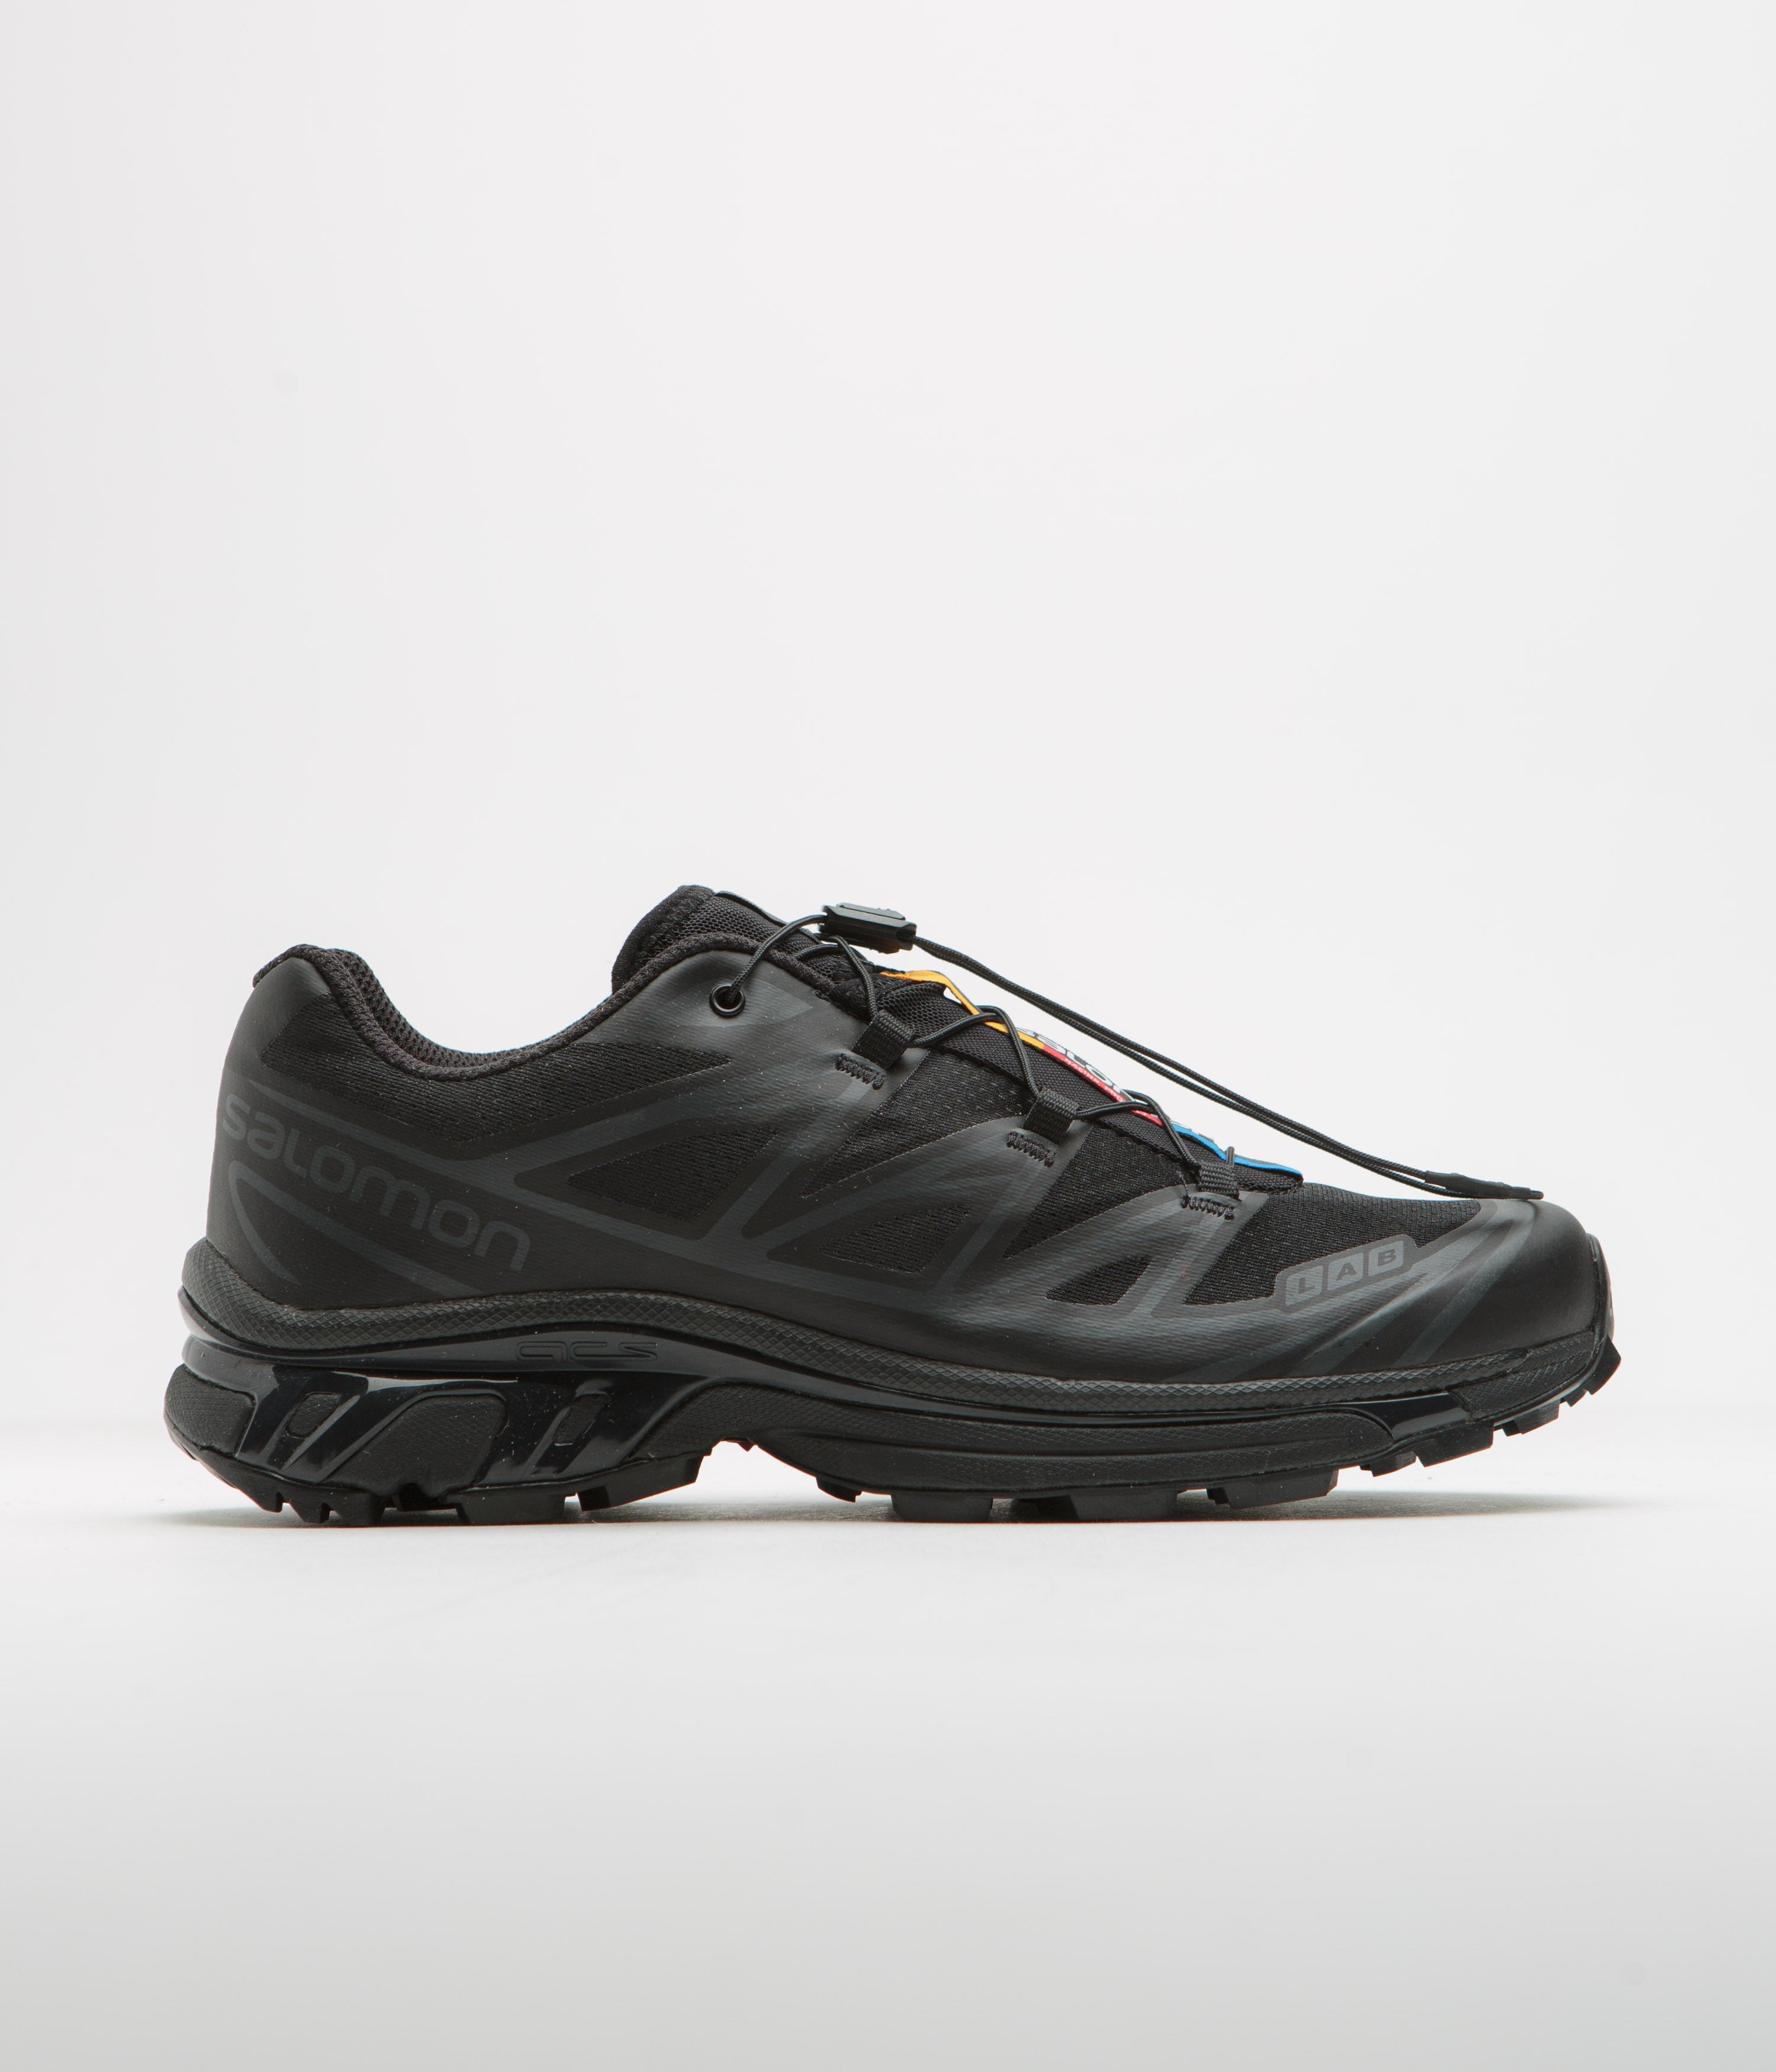 SALOMON Contagrip CX Thinsulate Men's Black Suede Hiking Shoes Size 7.5 |  eBay